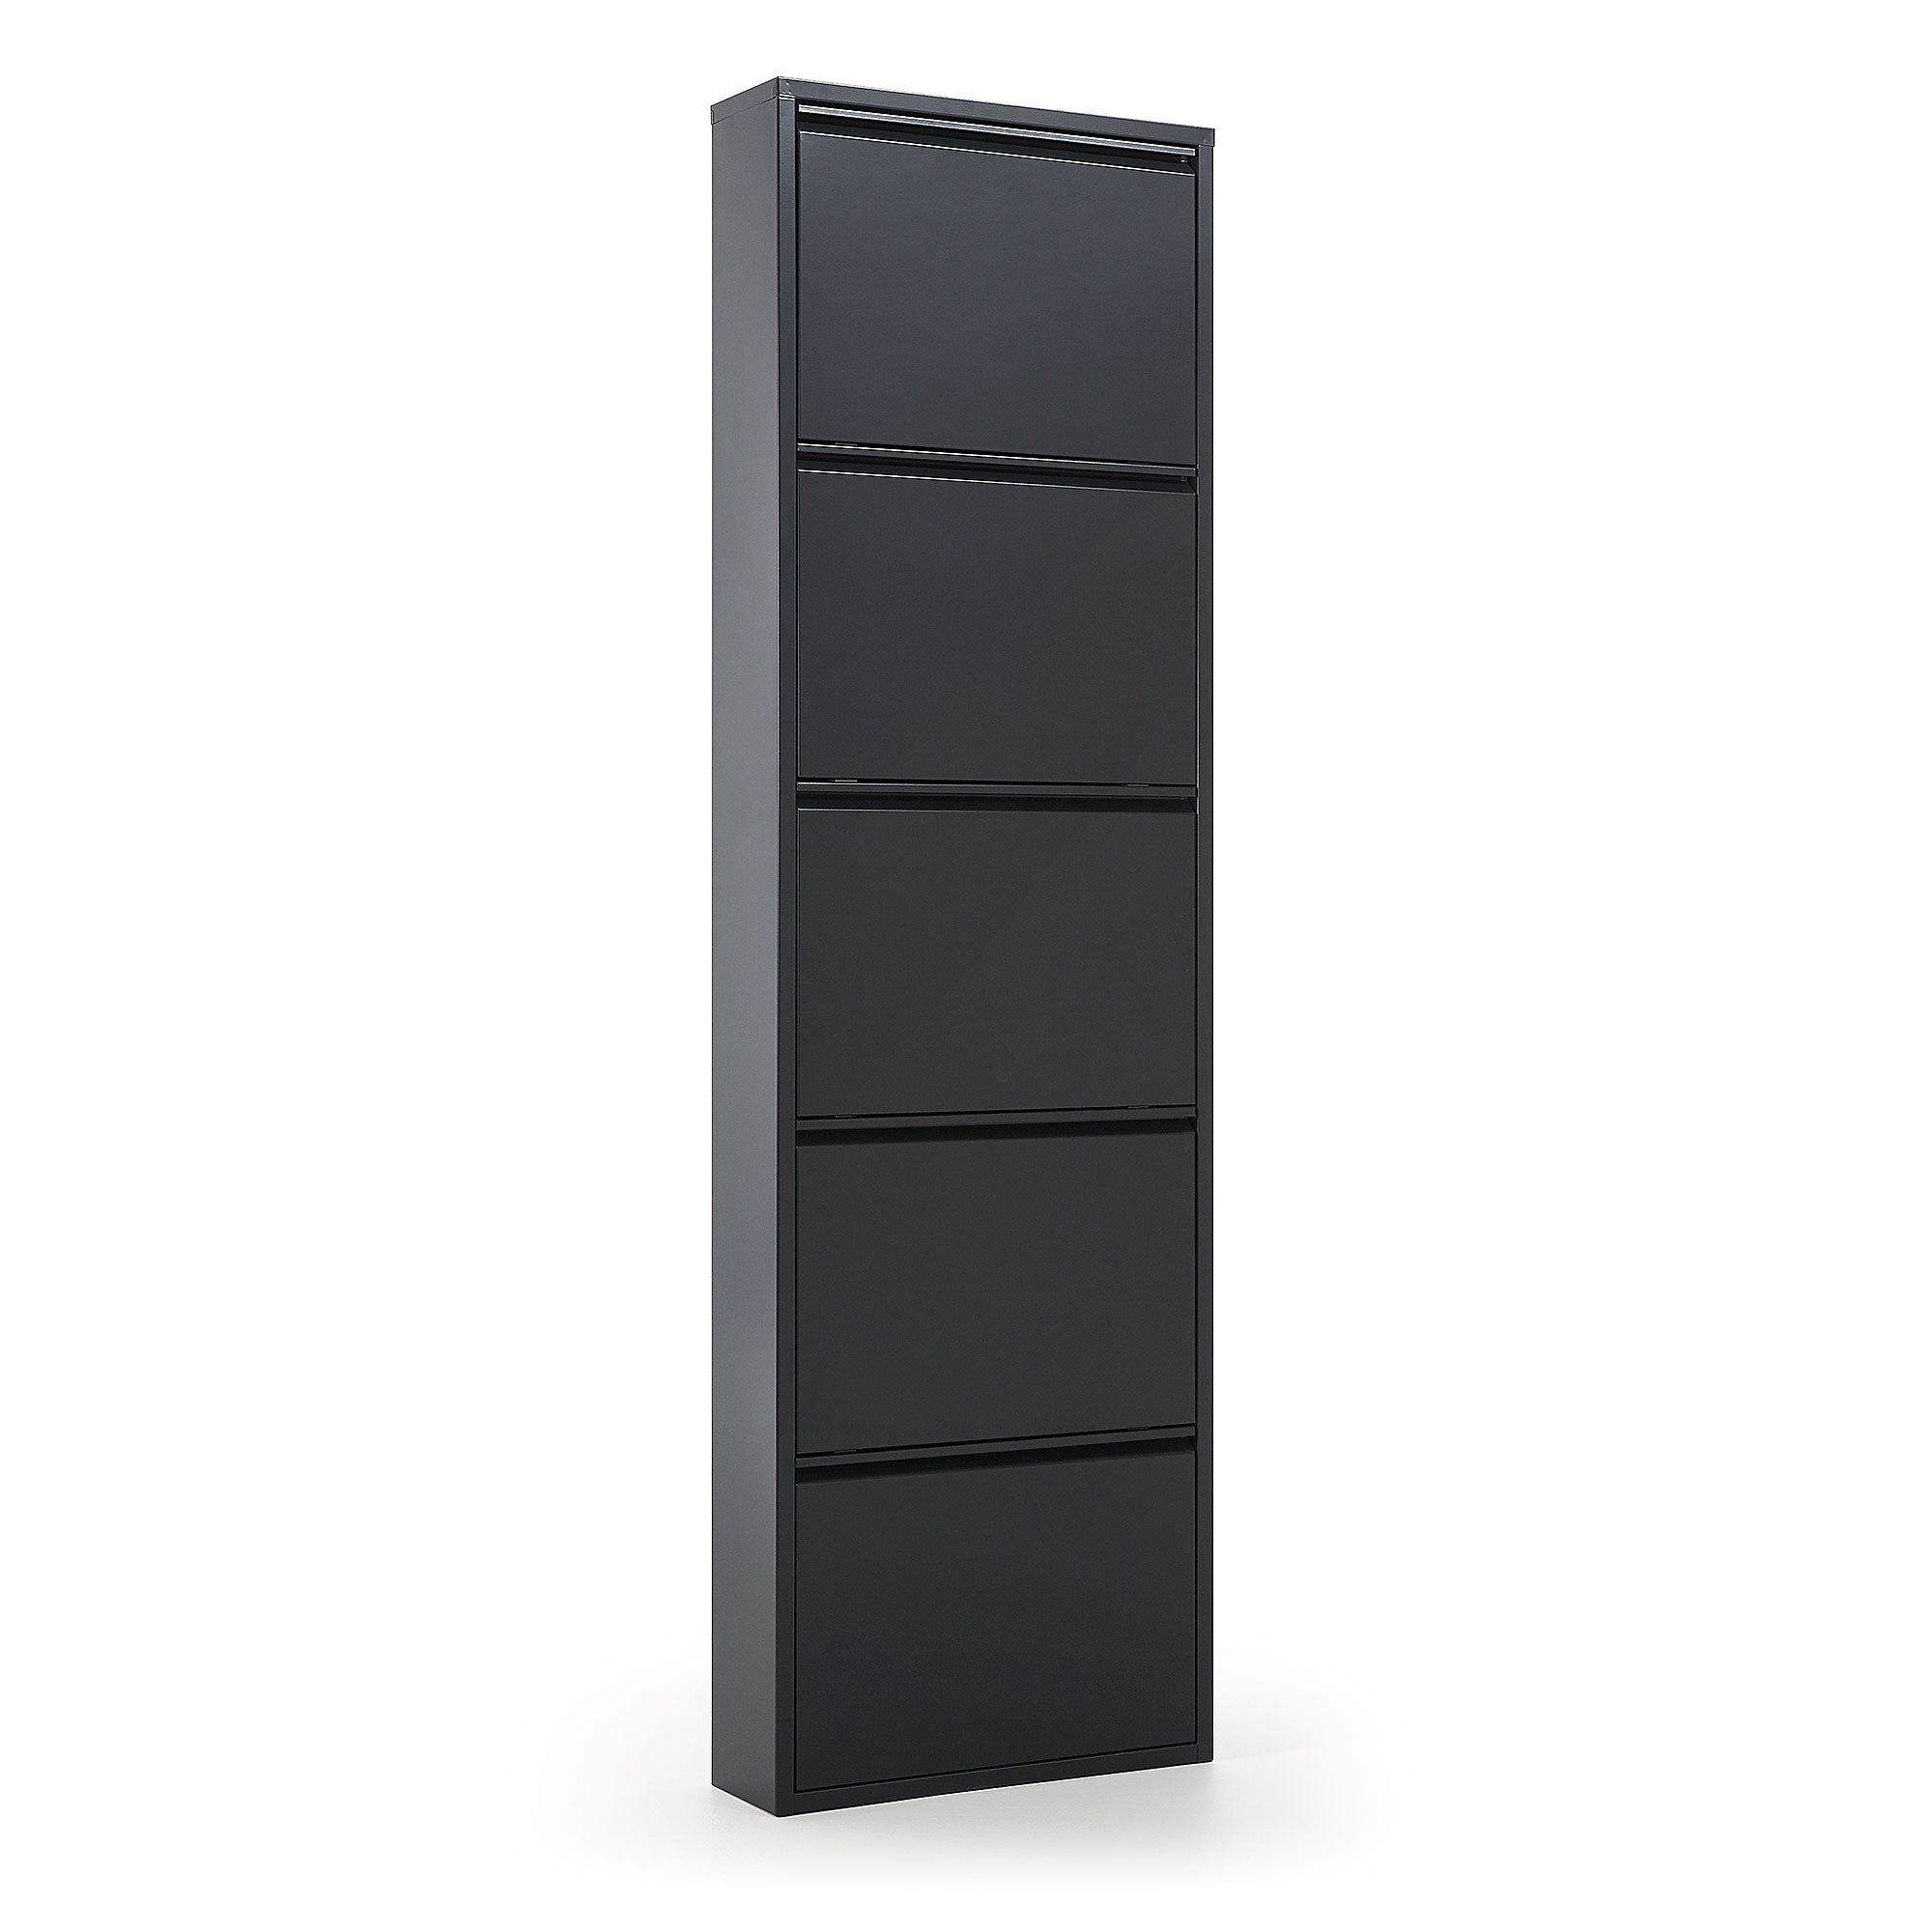 Ode shoe rack with 5 doors in black, 50 x 168.5 cm